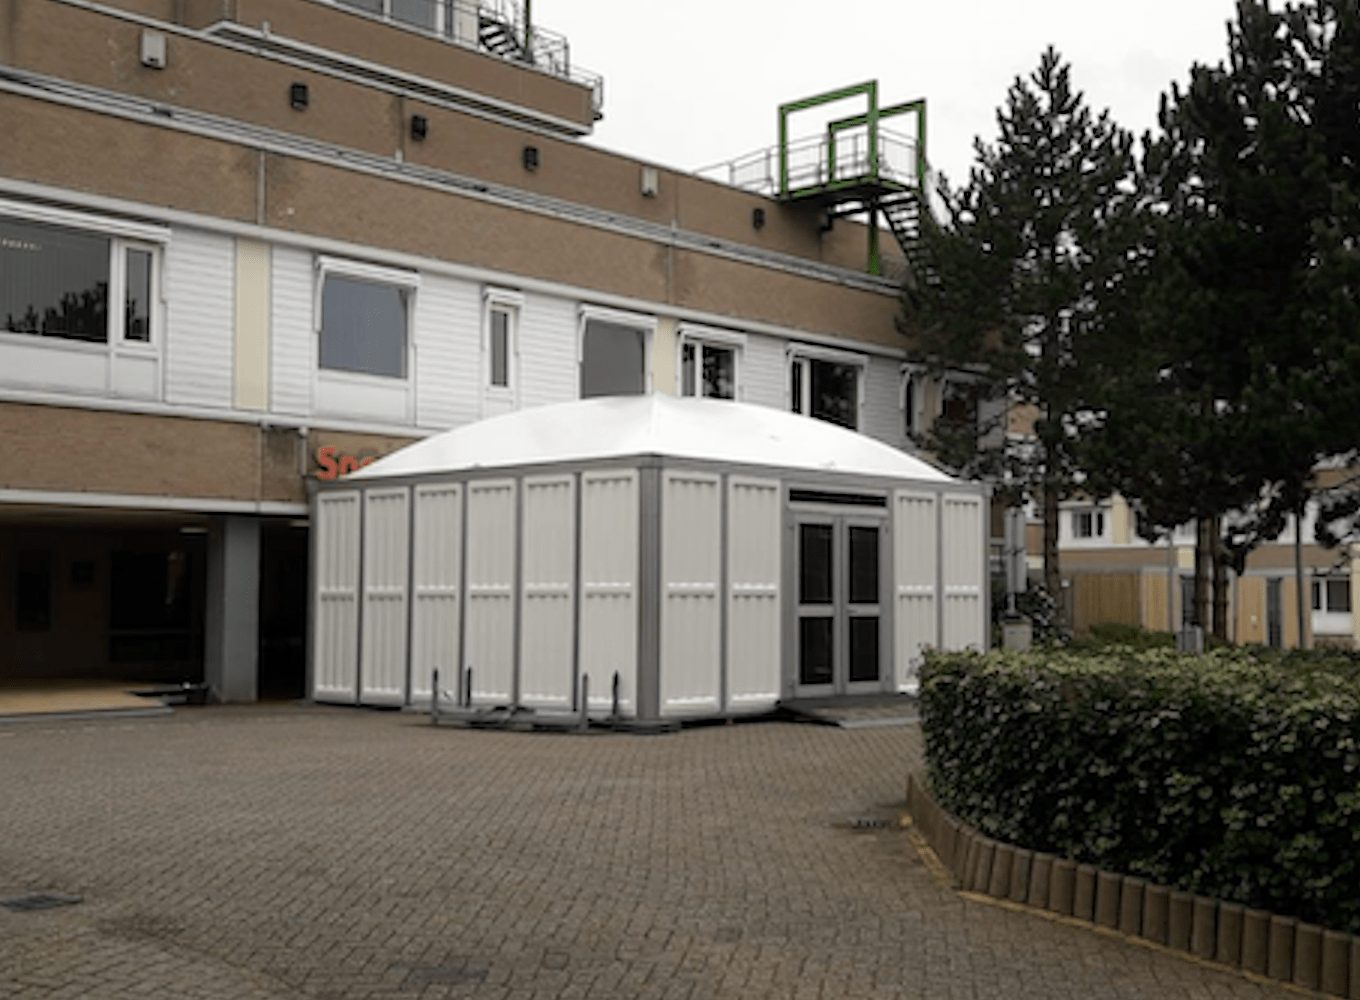 Quarantäne Zelt (Triage Zelt) von www.Interten.de in Alkmaar Zeltverleih - Zelt, Zelthalle, Leichtbauhalle für Krankenhäuser, Kliniken als Notaufnahme und Patienten-Unterkünfte